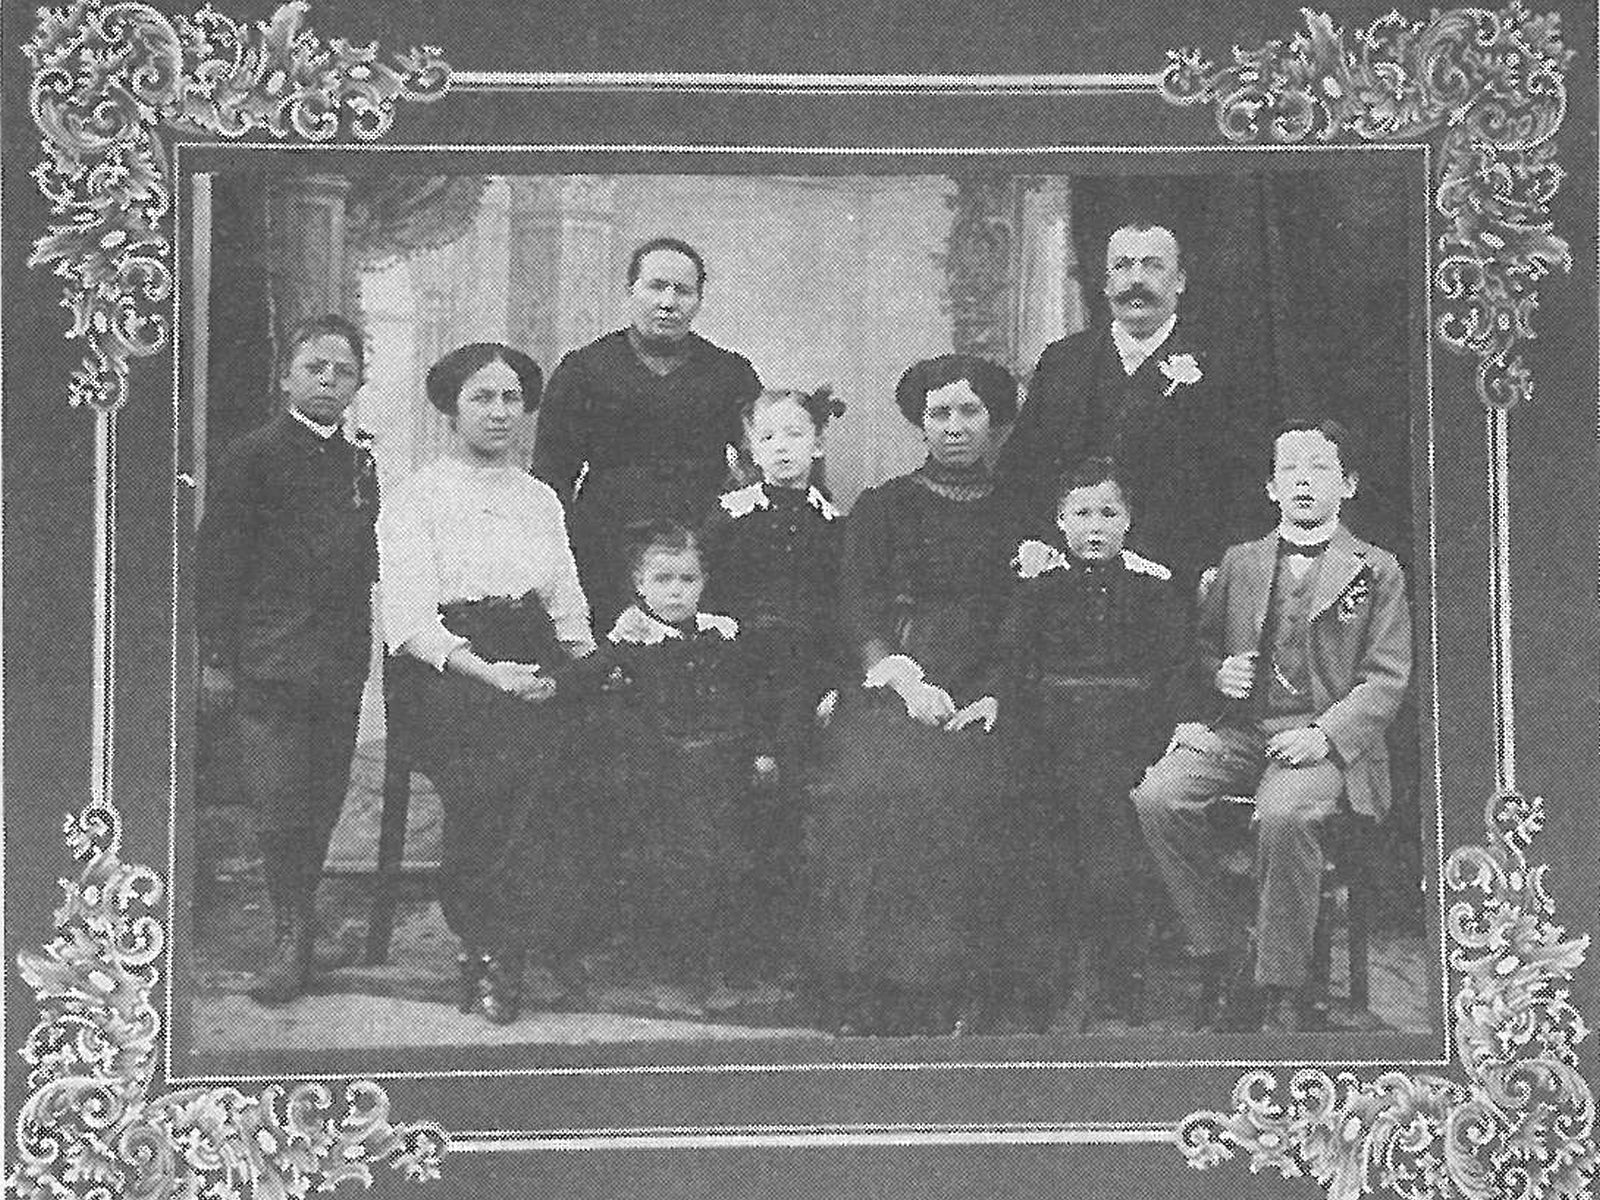  Schopflocher Skizzen Familie Schübel - Bild wird mit einem Klick vergrößert 